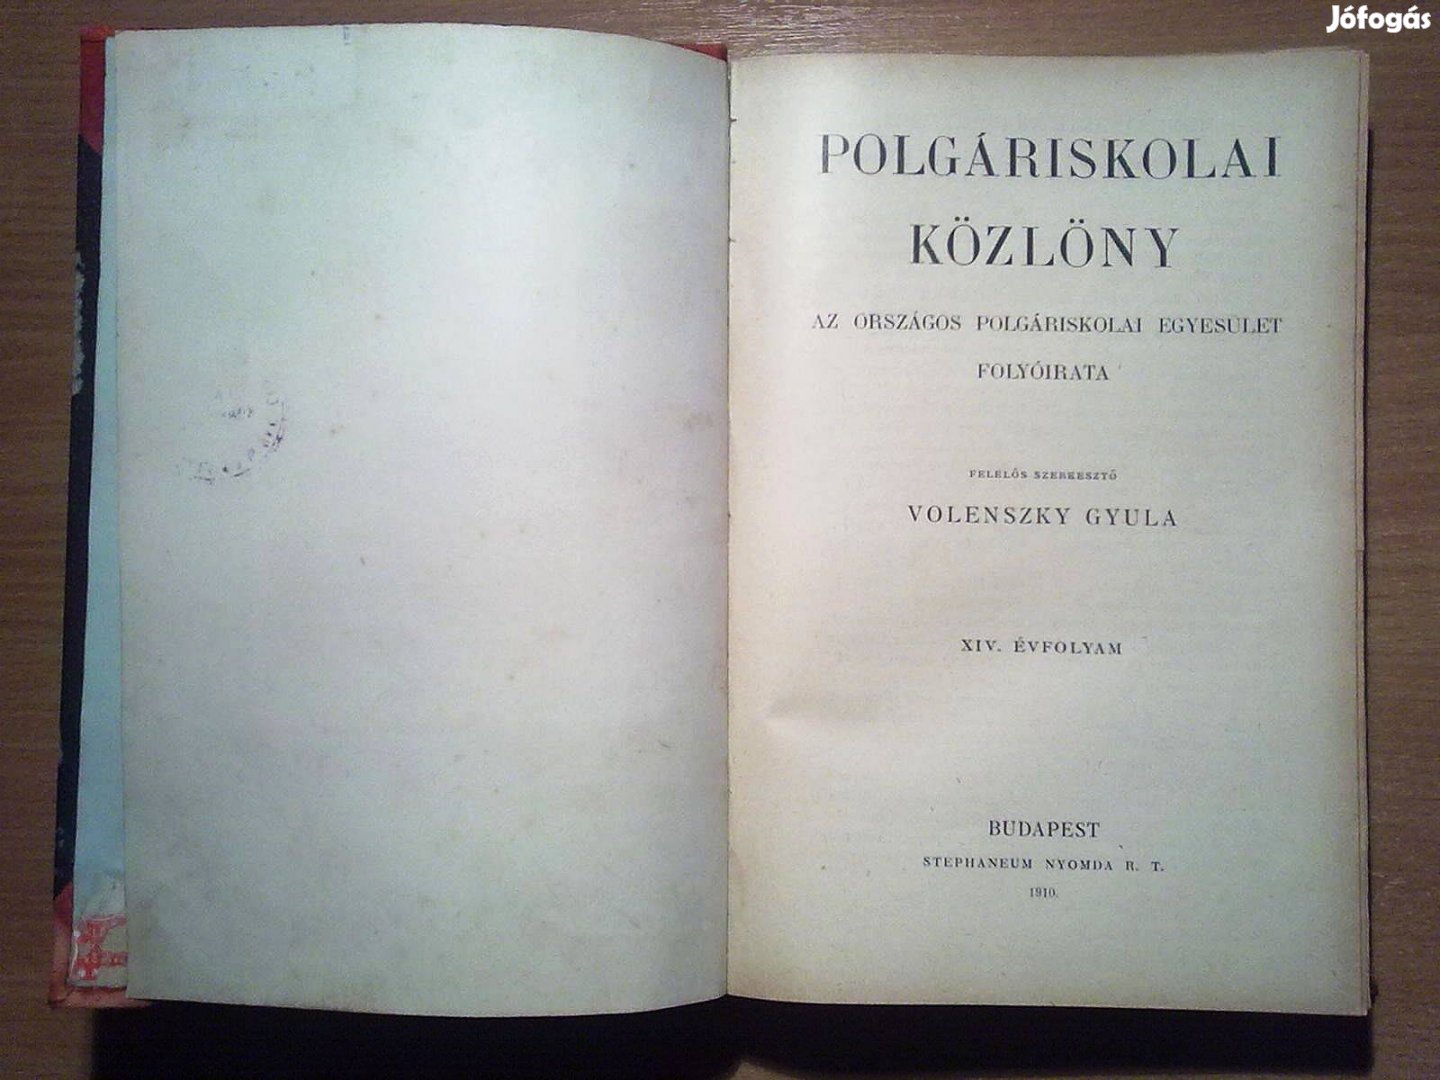 Polgáriskolai Közlöny (Stephaneum, 1910-es kiadás) Ritkaság!